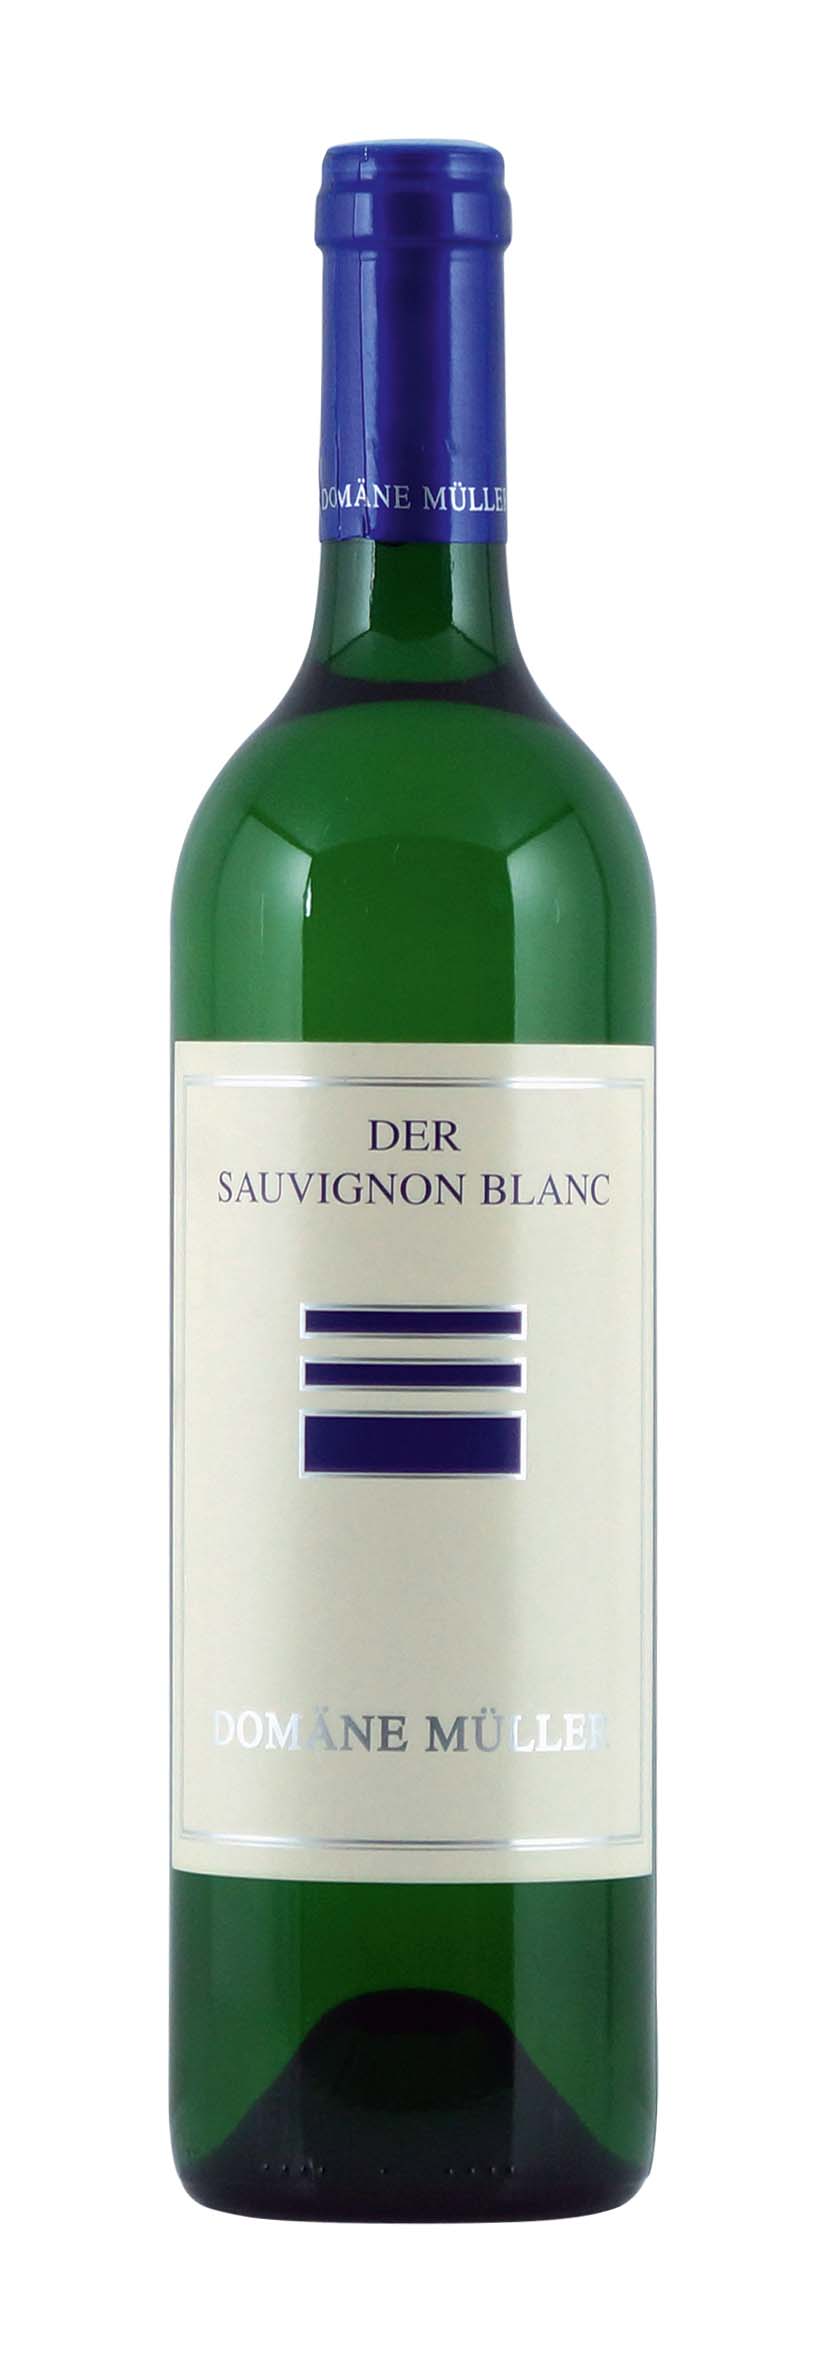 Ried Deutsche Weingärten Sauvignon Blanc 2013